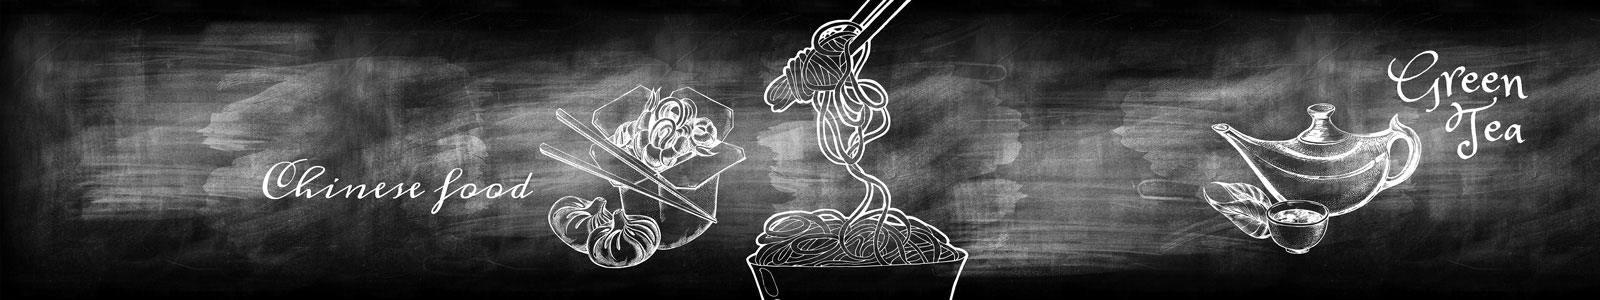 №5760 - Китайская еда и чай, рисунки на меловой доске